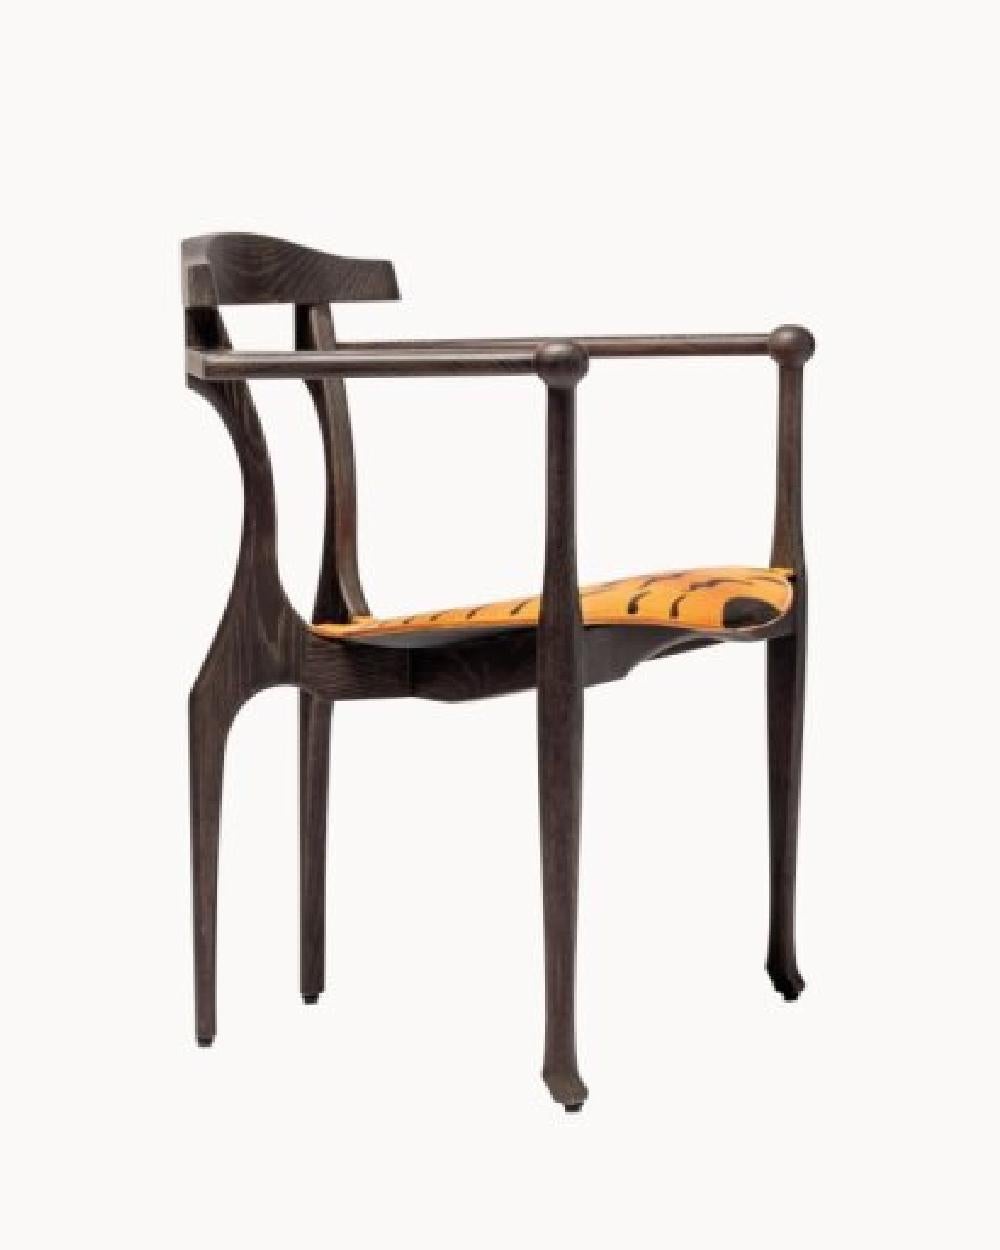 Der Tiger Art Gaulino interpretiert eine Ikone von BD neu.
Der Stuhl Gaulino ist ein ikonisches Werk von Oscar Tusquets. Die limitierte Auflage des Tiger Art Gaulino verbindet die Struktur des Gaulino Easy mit einem handbemalten Sitz von Tusquets.